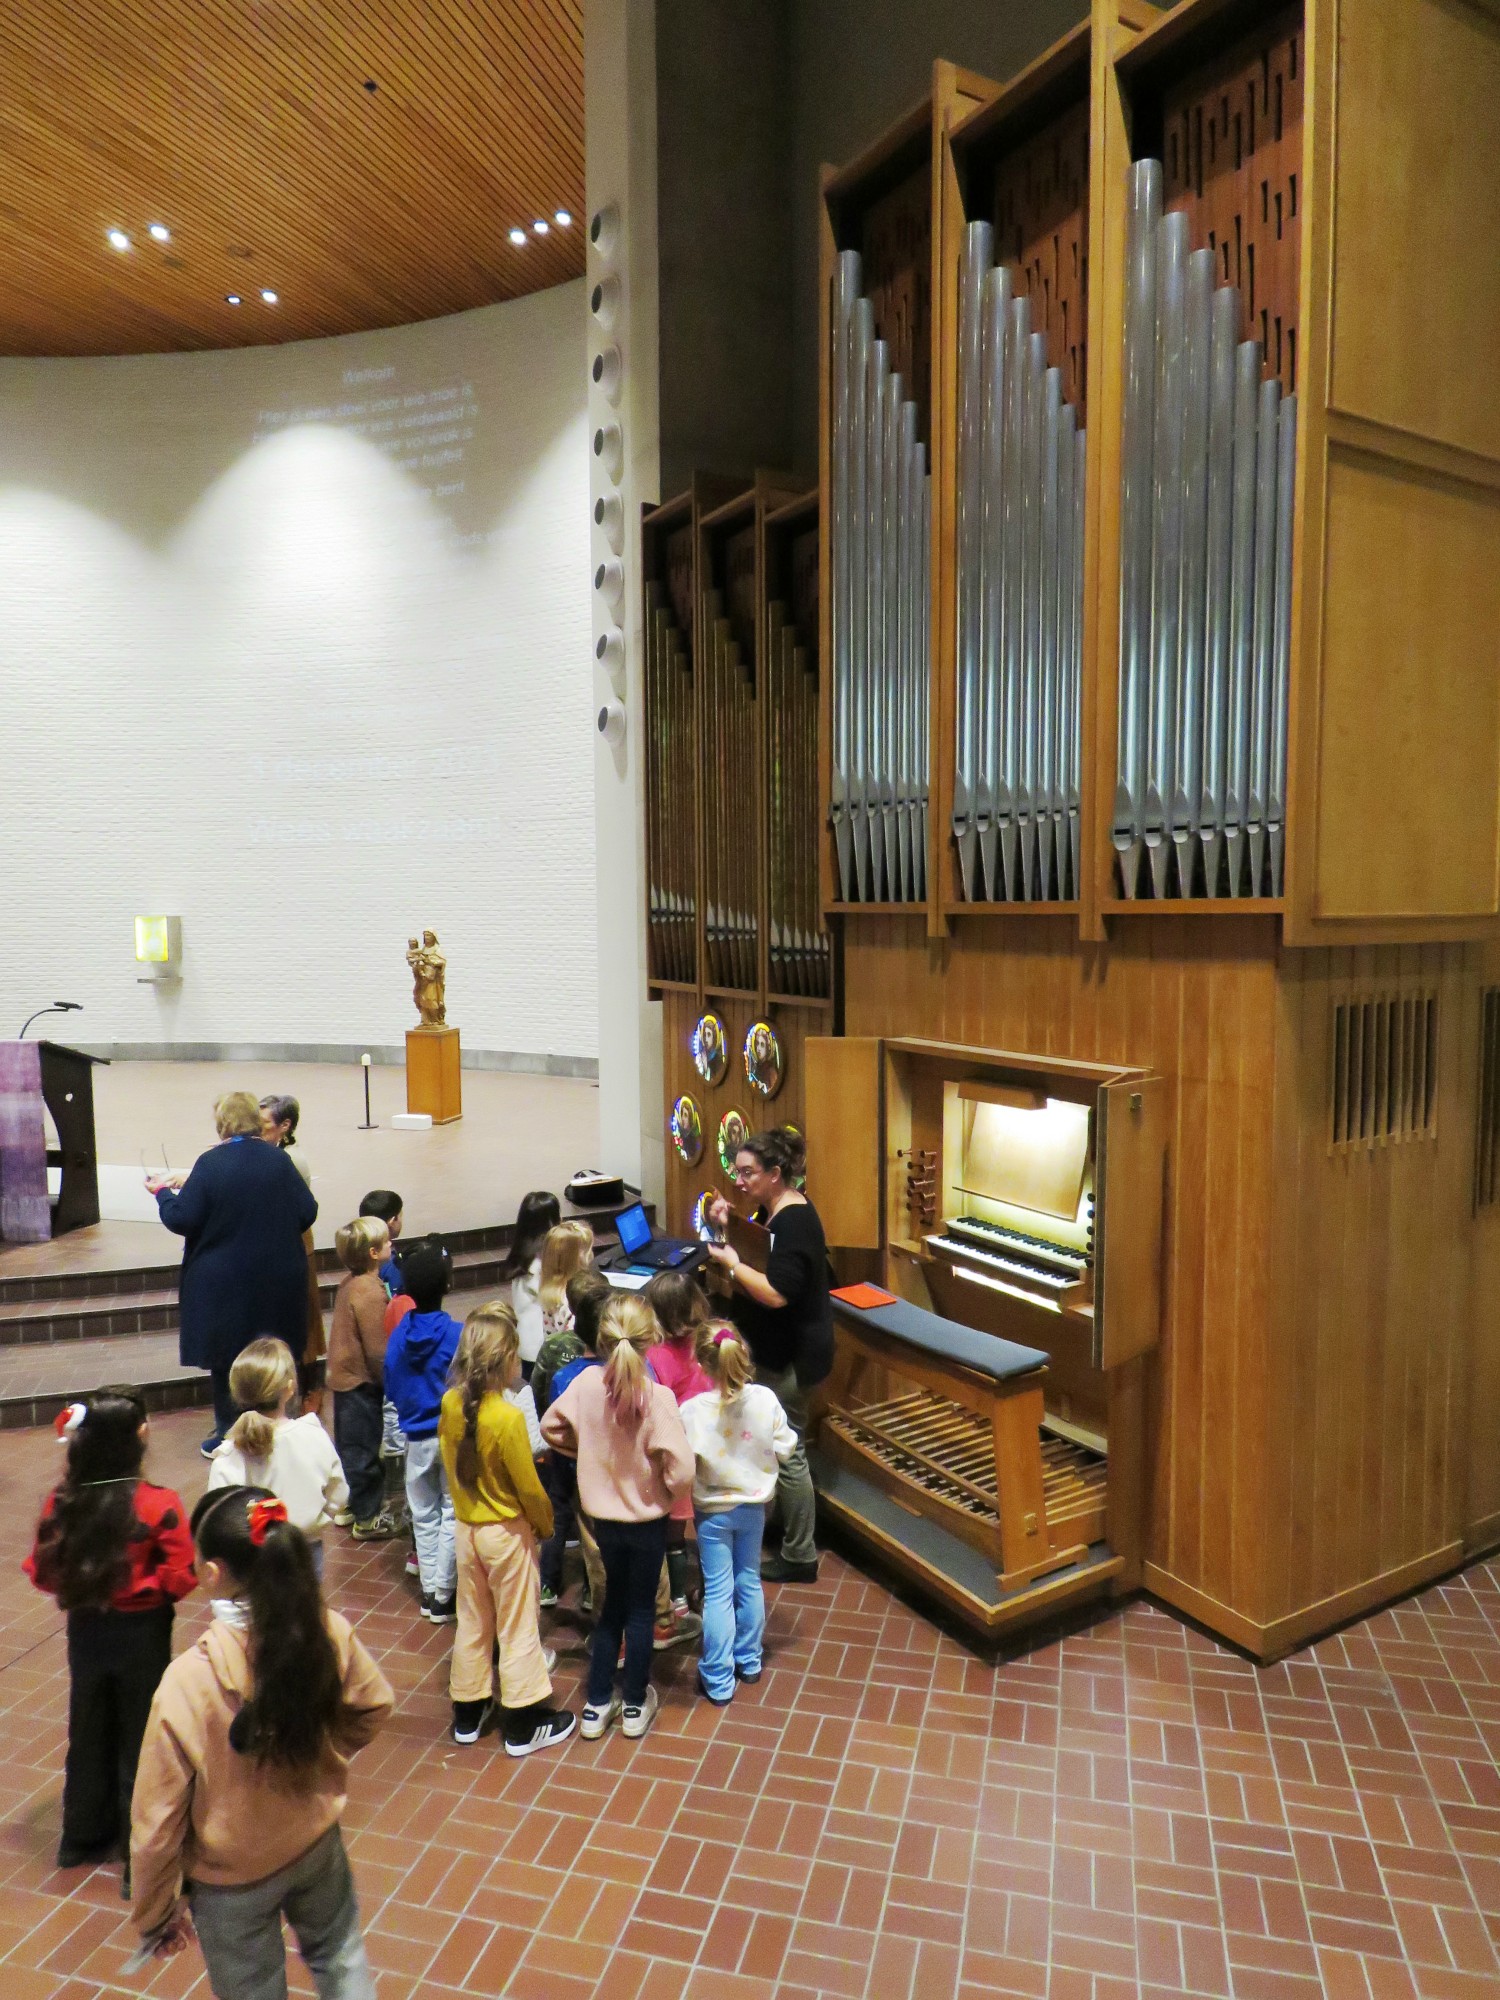 Het grote orgel in de kerk heeft wel 1132 pijpen... zie je ze allemaa?